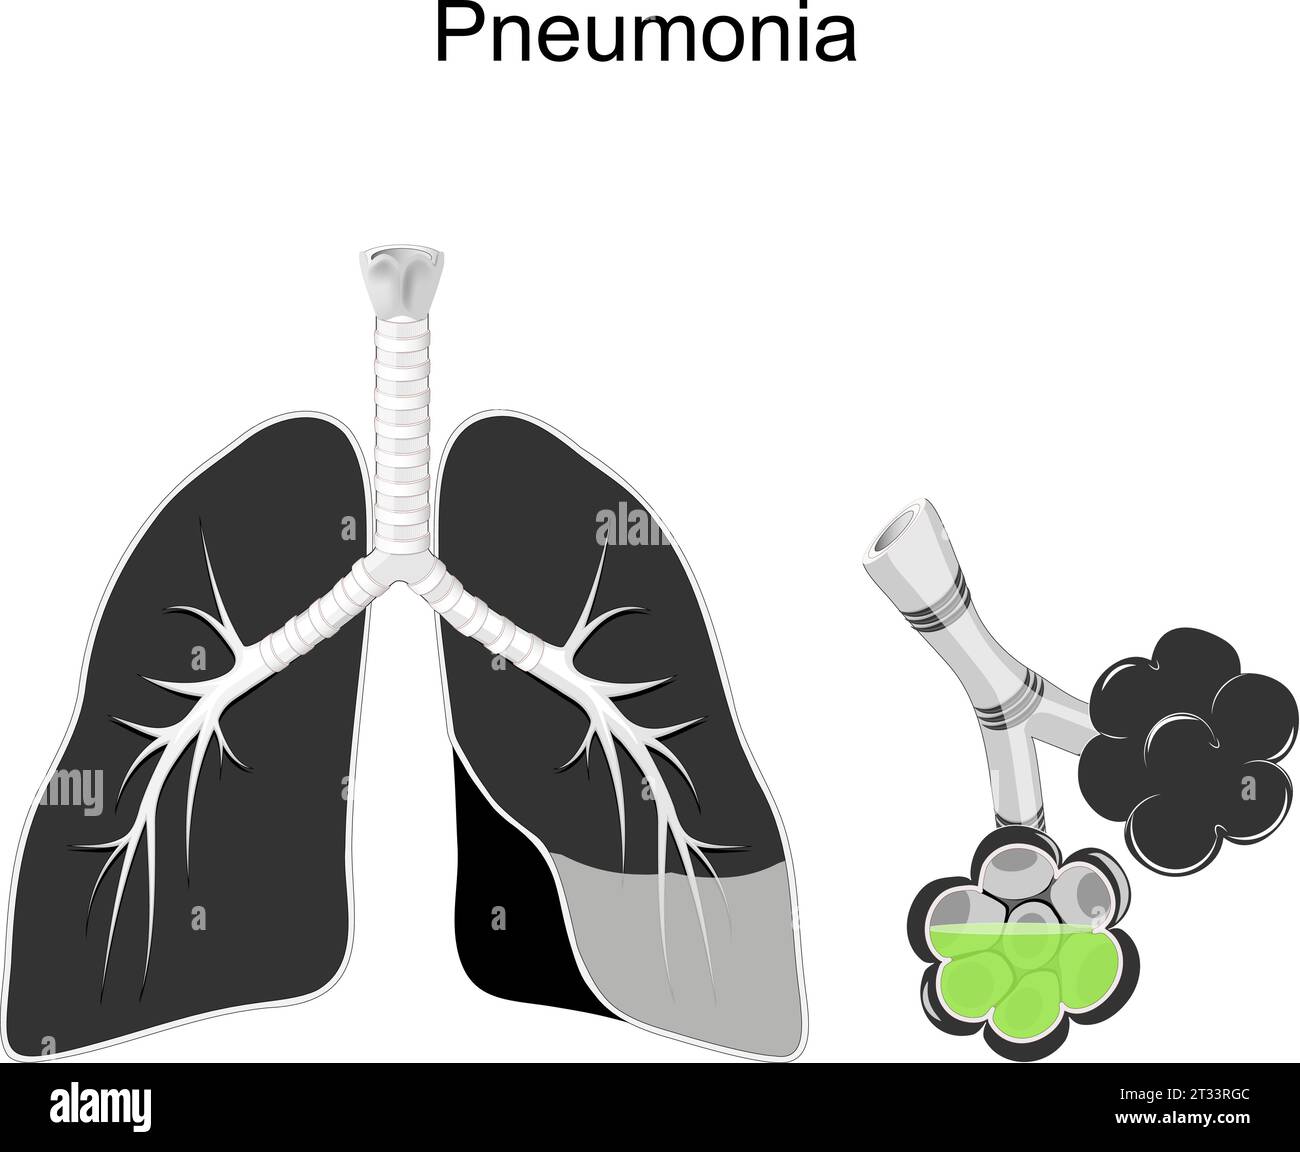 Polmonite. Sezione trasversale di polmoni umani, bronchi e alveoli con liquido verde infezione respiratoria. Illustrazione vettoriale in bianco e nero sulla pneumo Illustrazione Vettoriale